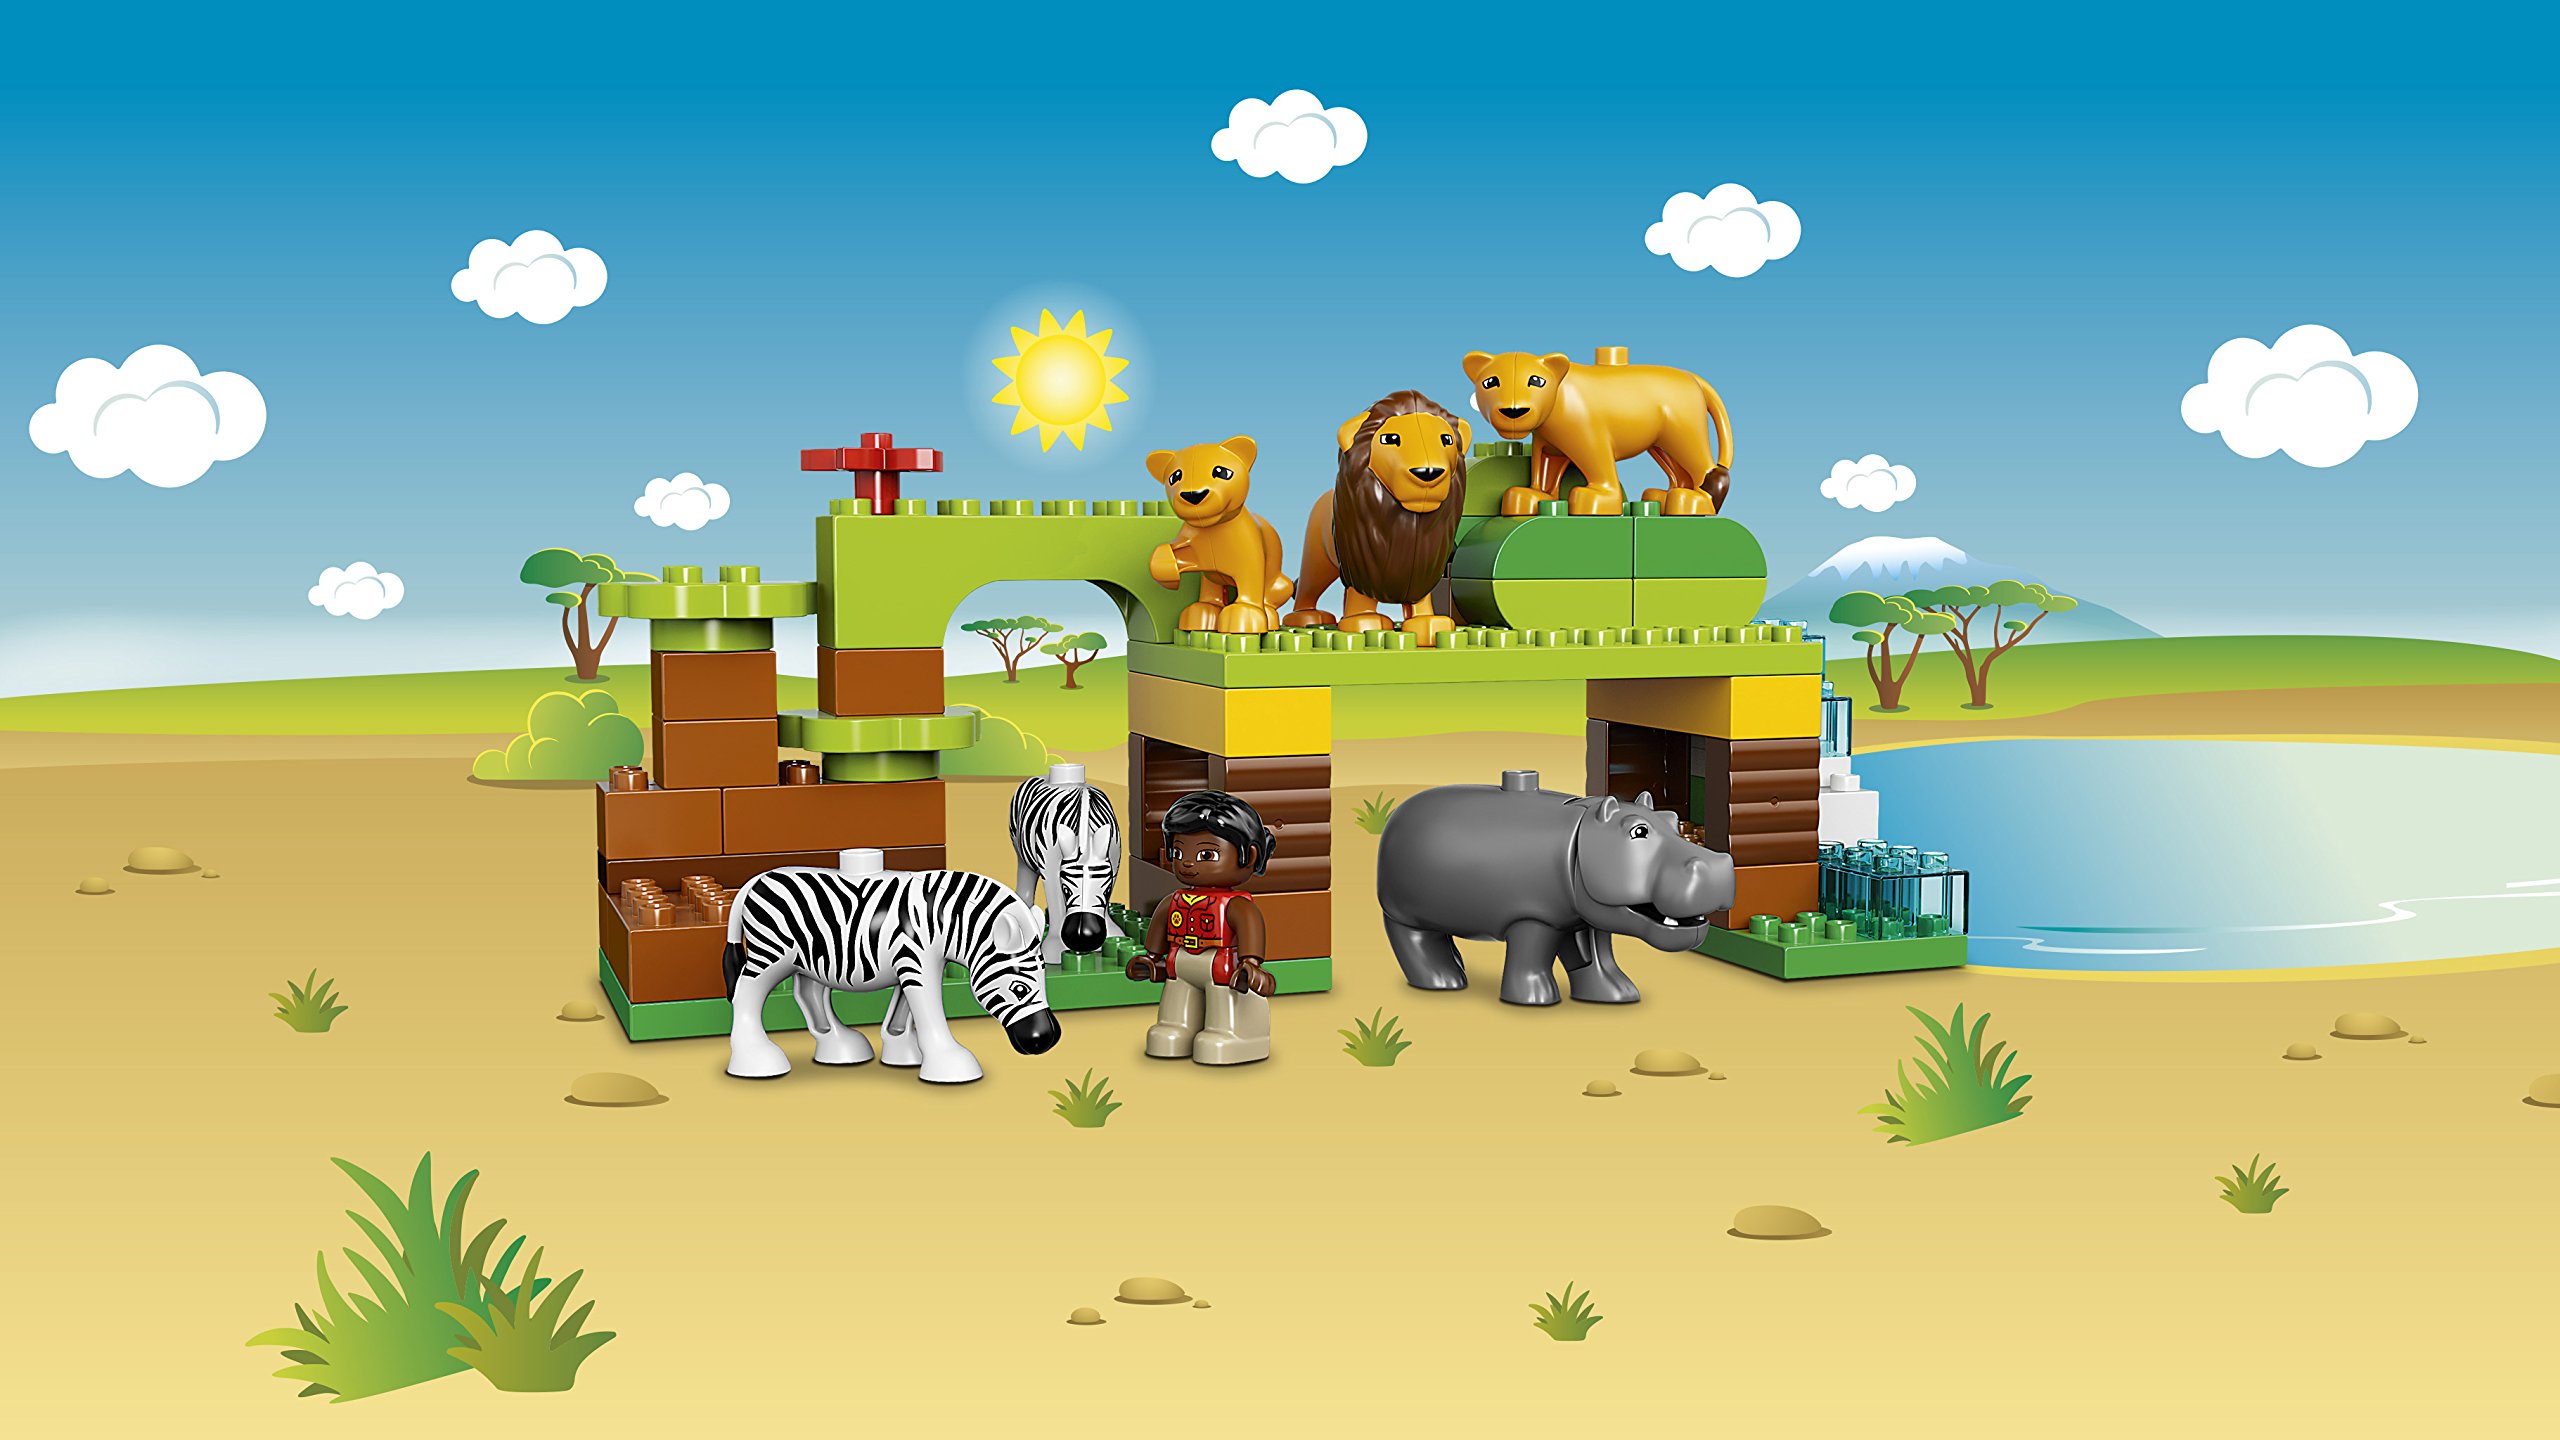 LEGO (Duplo of The World Animal Round-The-World Set 10805